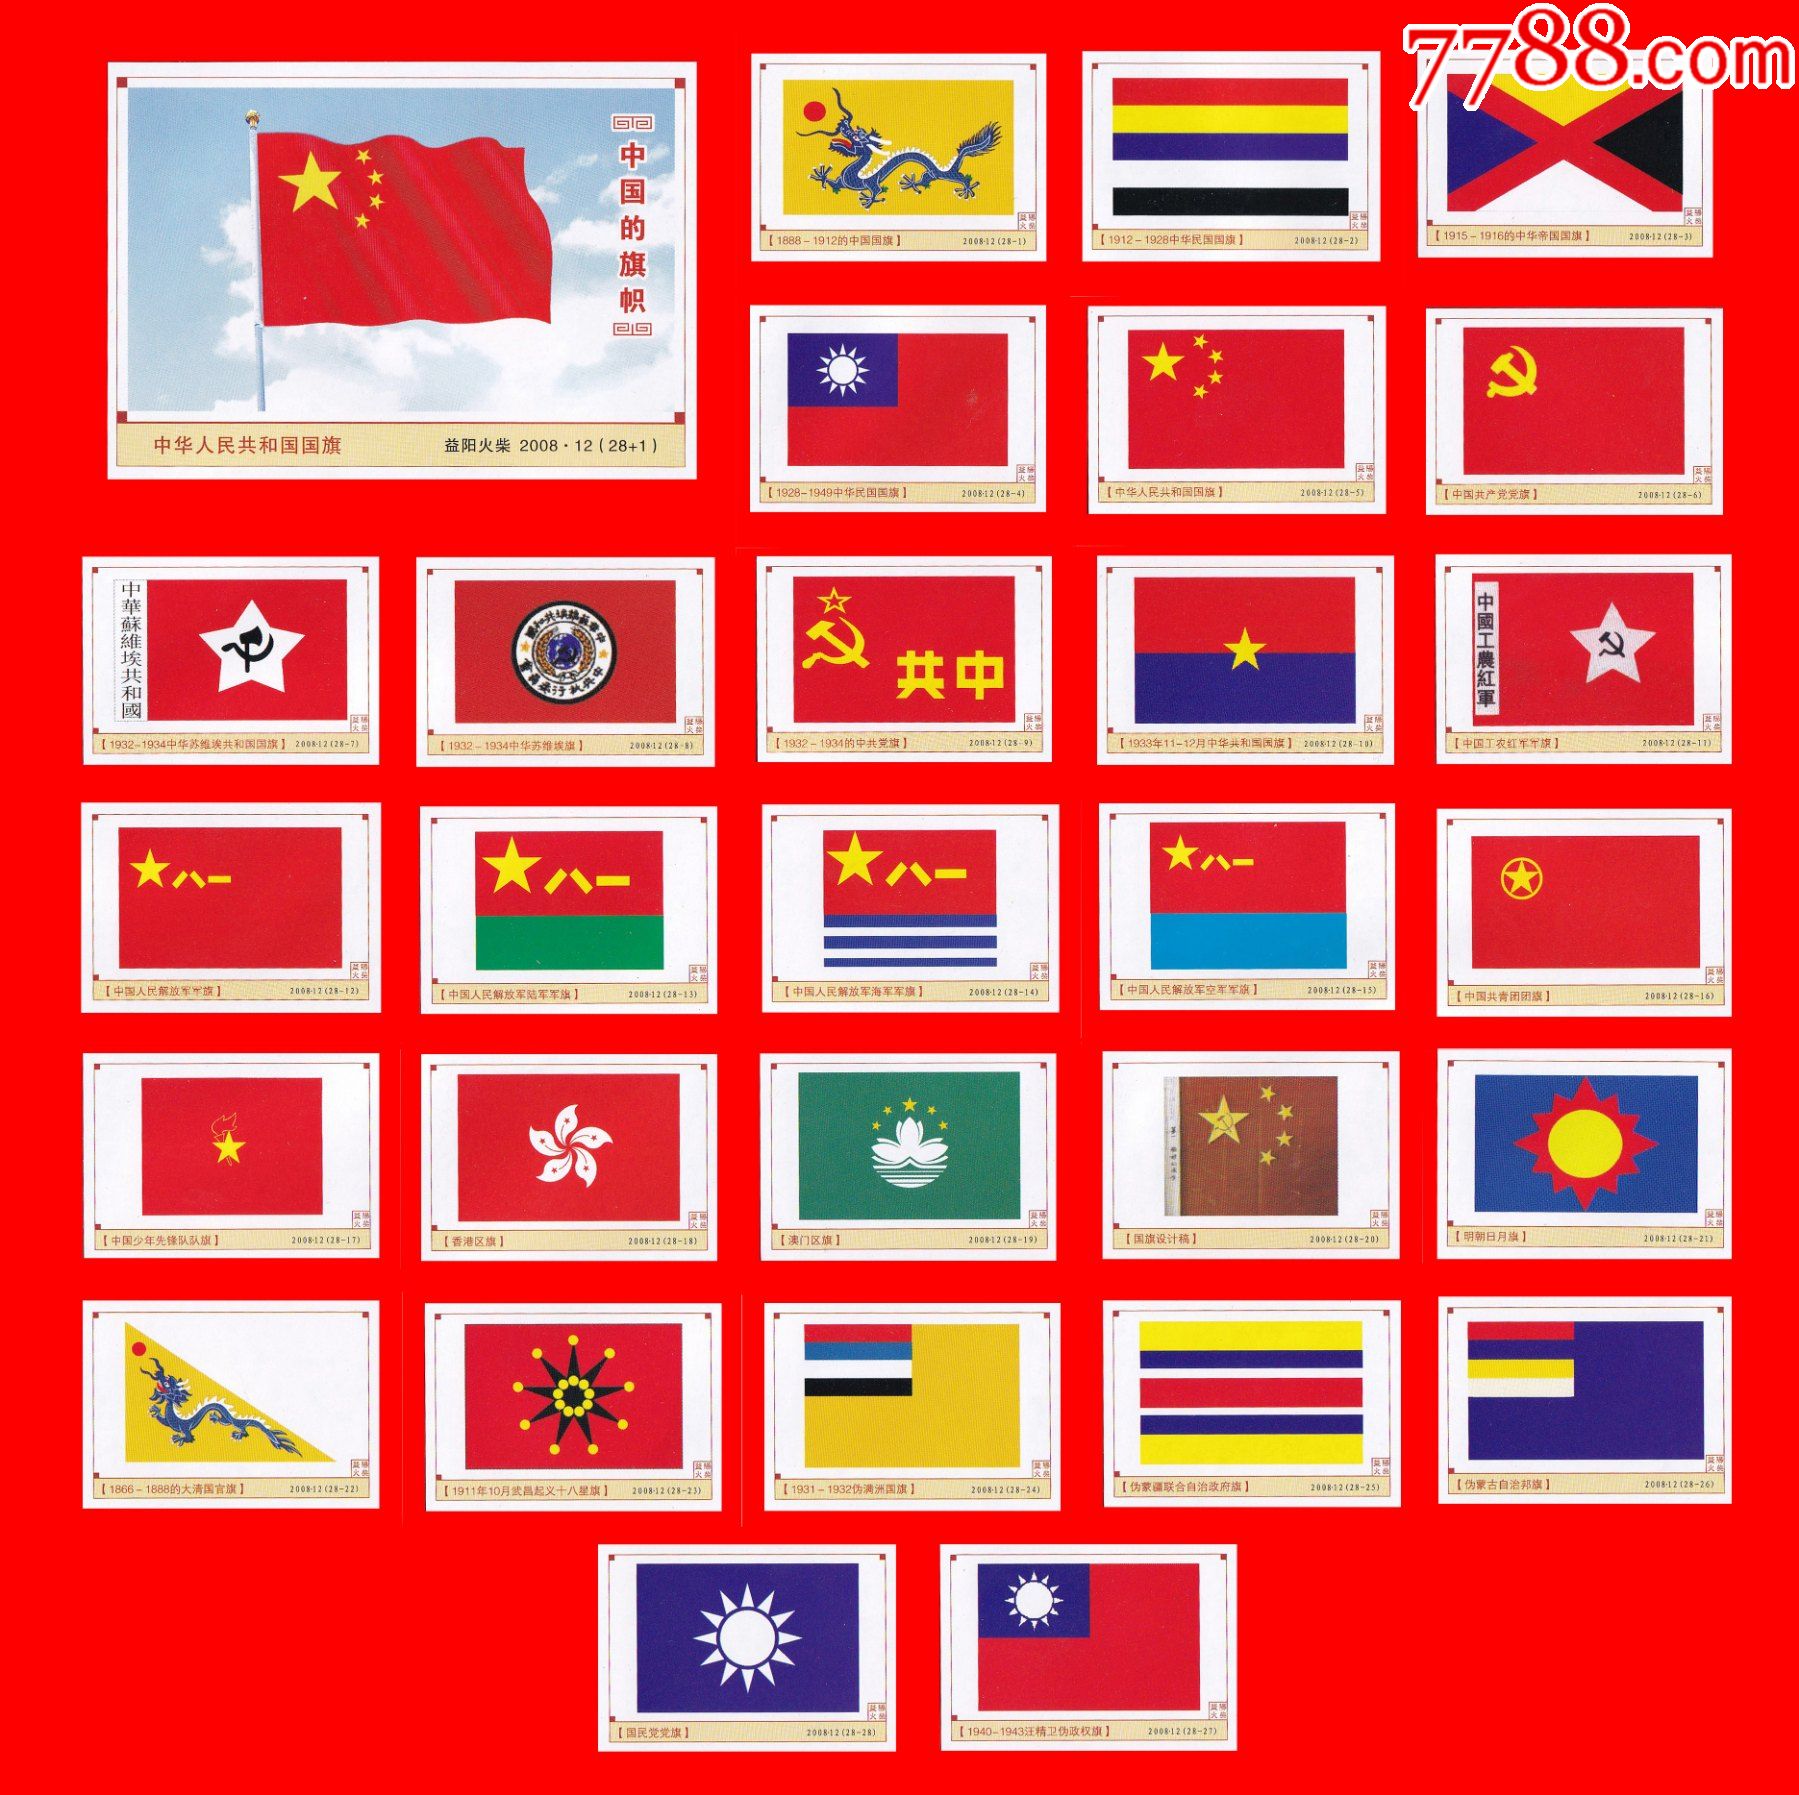 中国的旗帜火花益阳2008·02贴标28 1